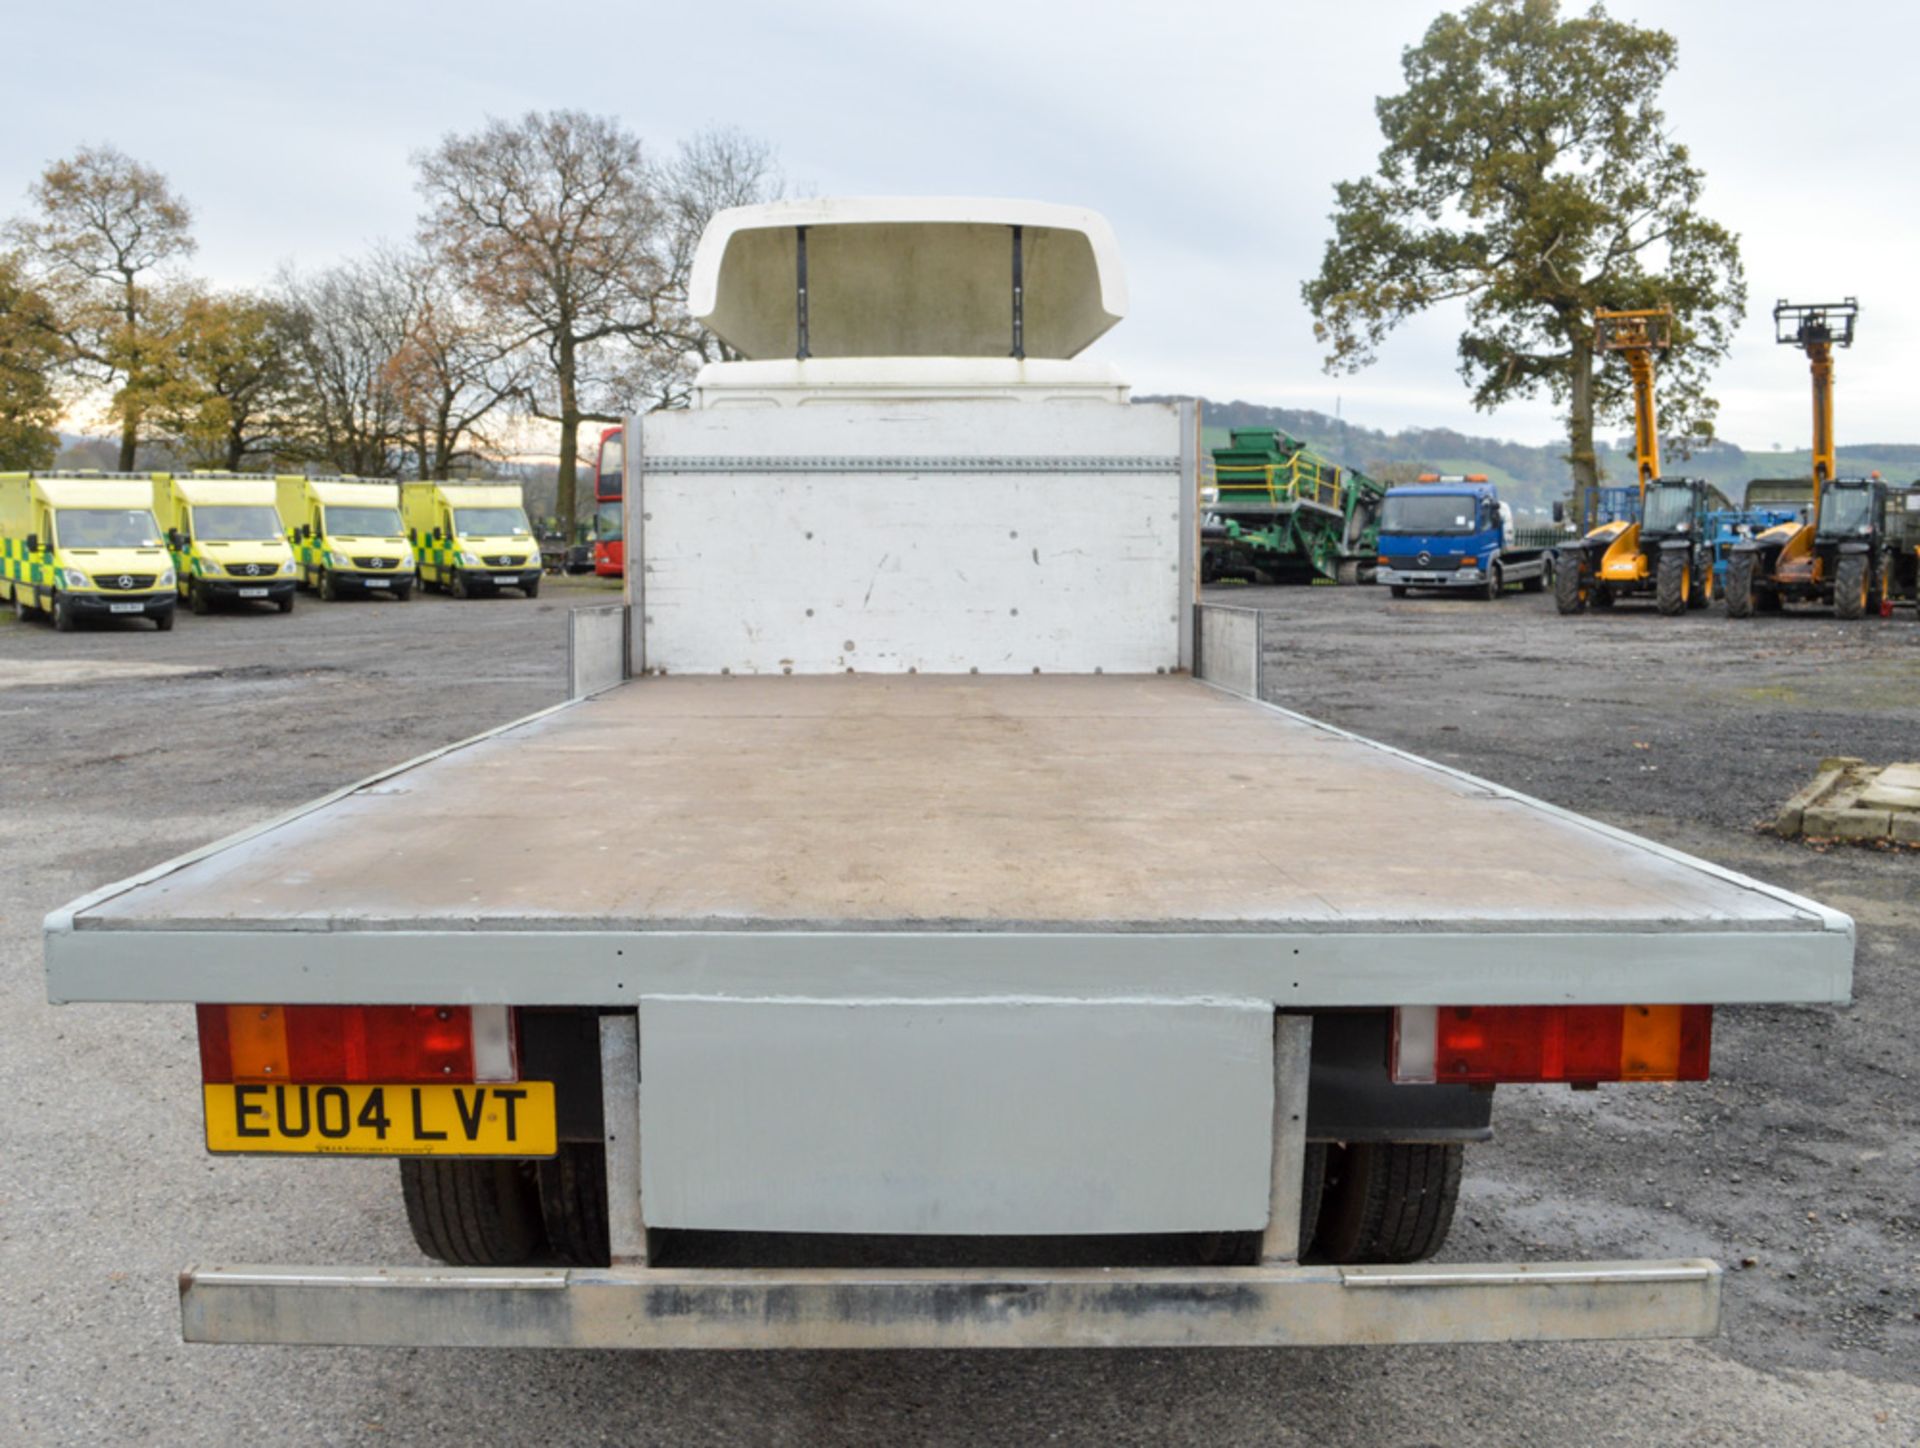 MAN LE 10 220 10 tonne flat bed lorry Registration Number: EU04 LVT Date of Registration: 26/04/2004 - Image 6 of 8